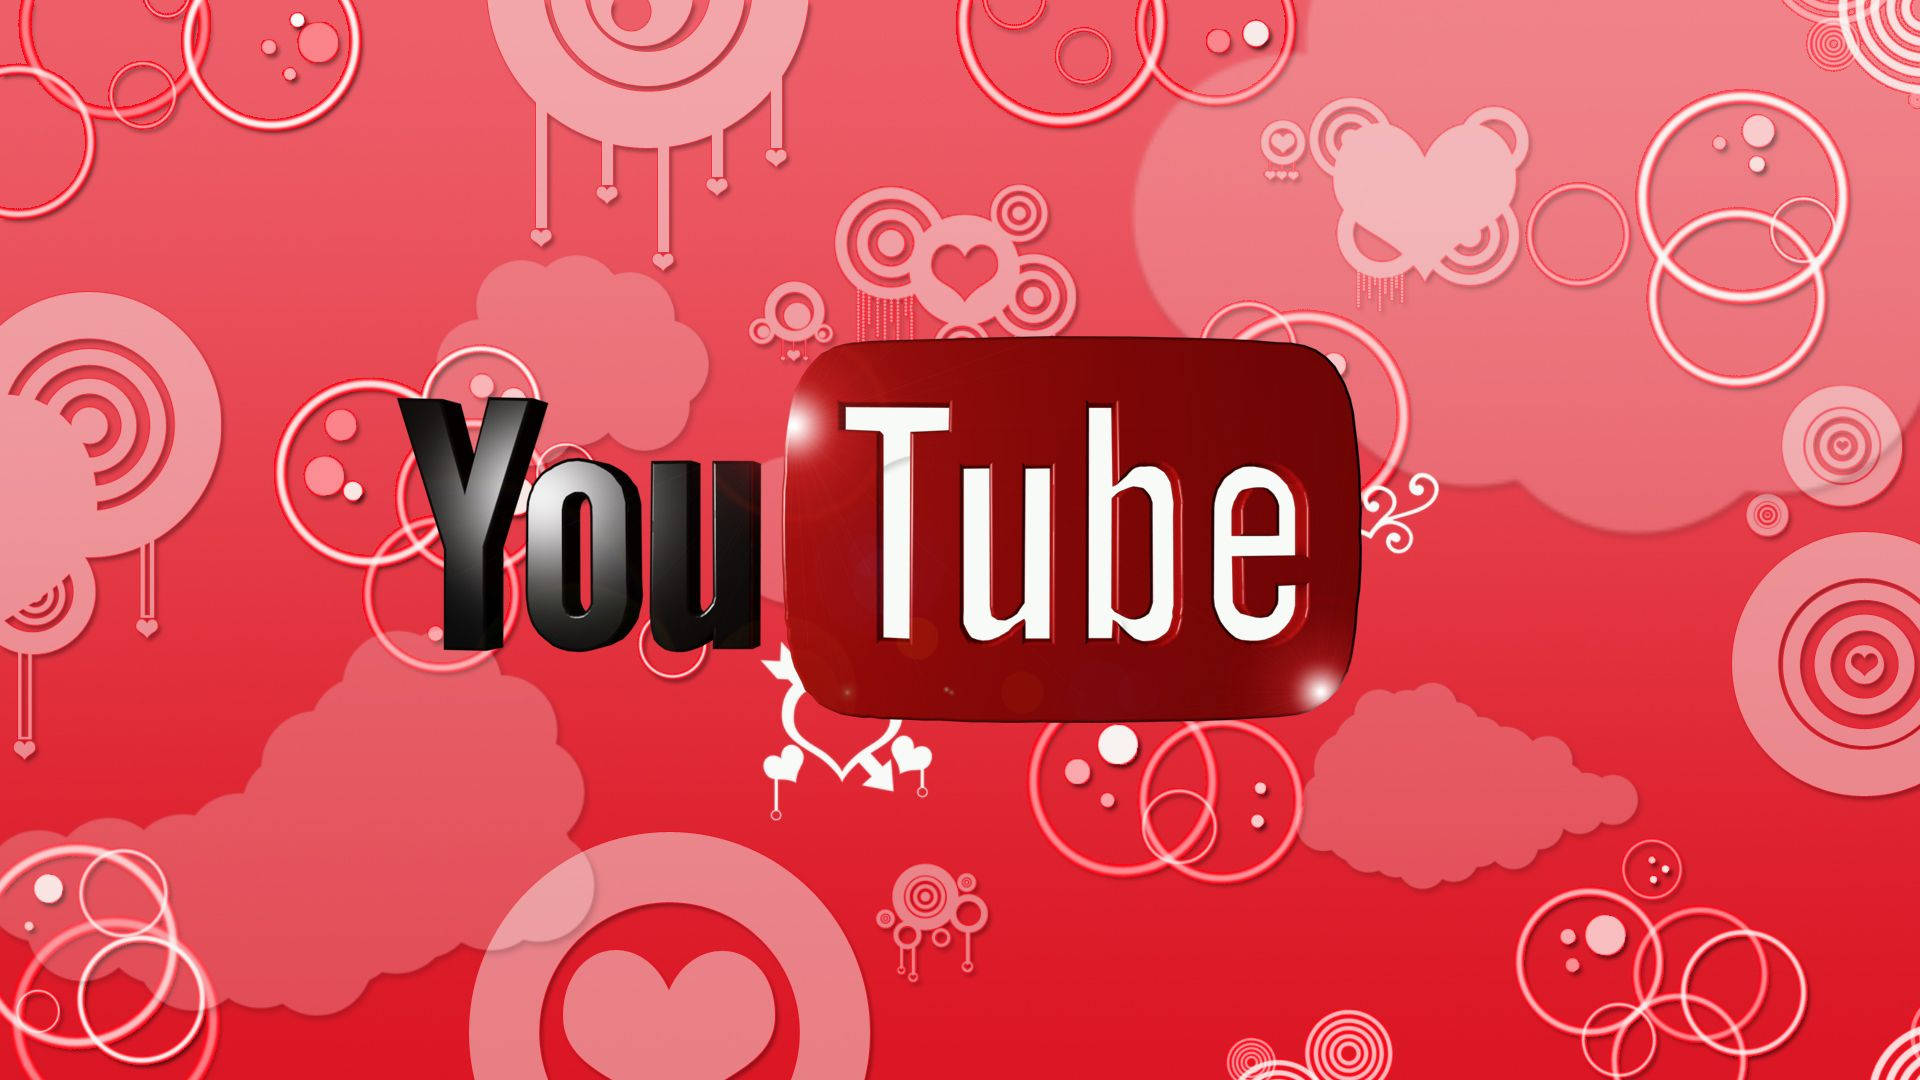 Youtube Logo On Geometric Design Background